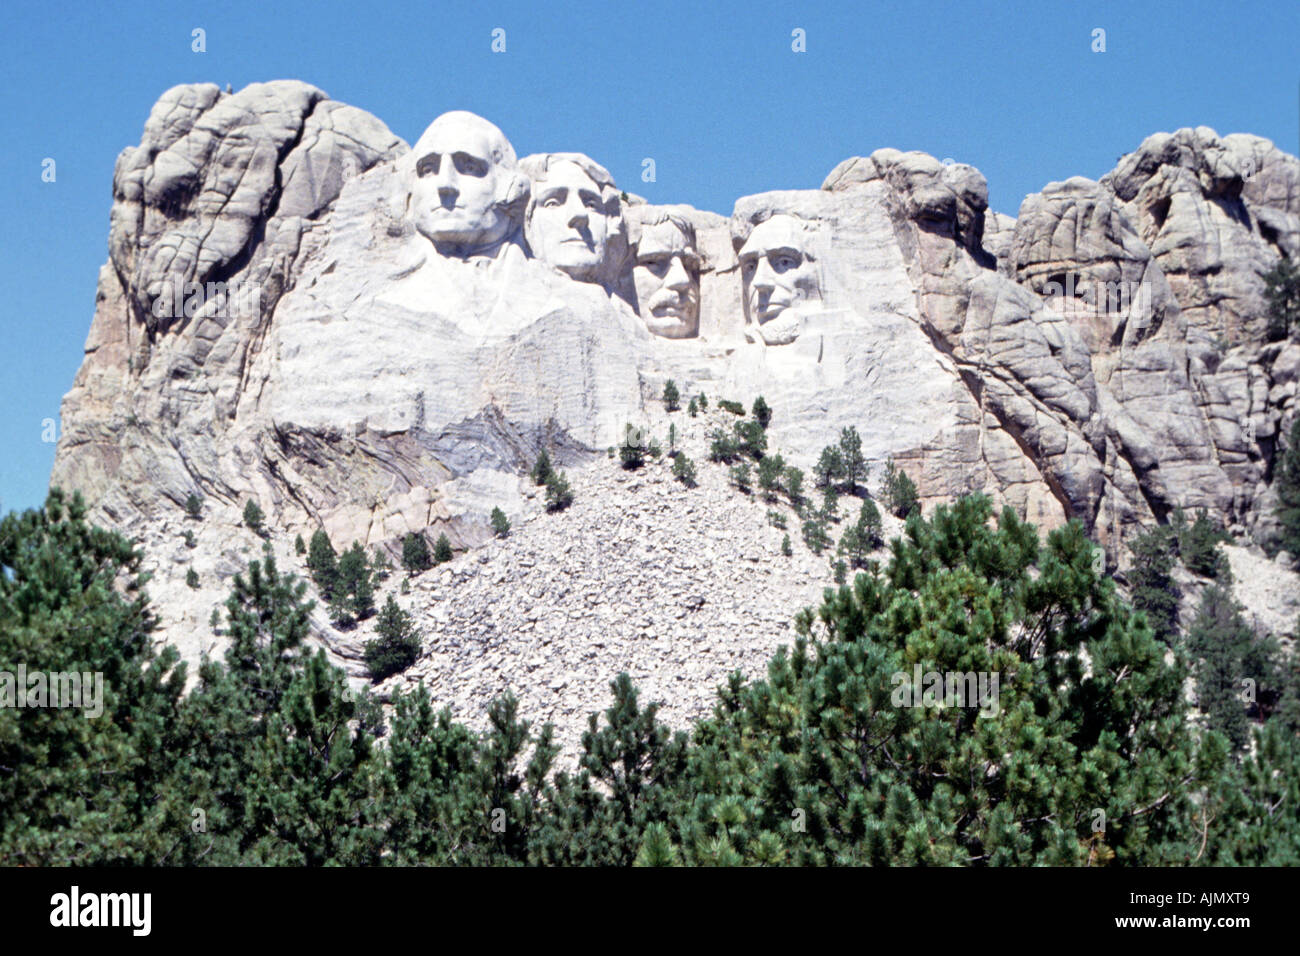 Le Mount Rushmore monument aux présidents des États-Unis Washington, Jefferson, Lincoln et Theodore Roosevelt dans le Dakota du Sud aux États-Unis. Banque D'Images